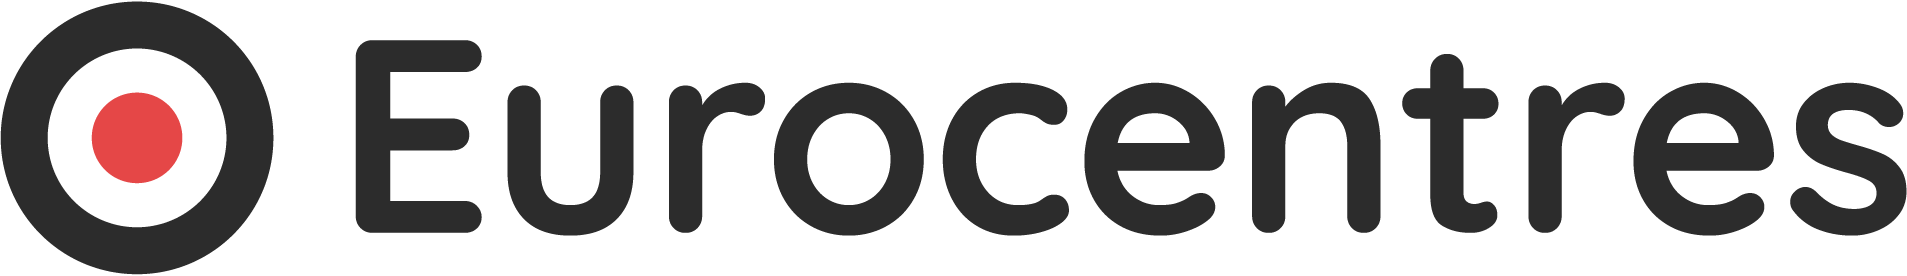 Eurocentres-Logo-01